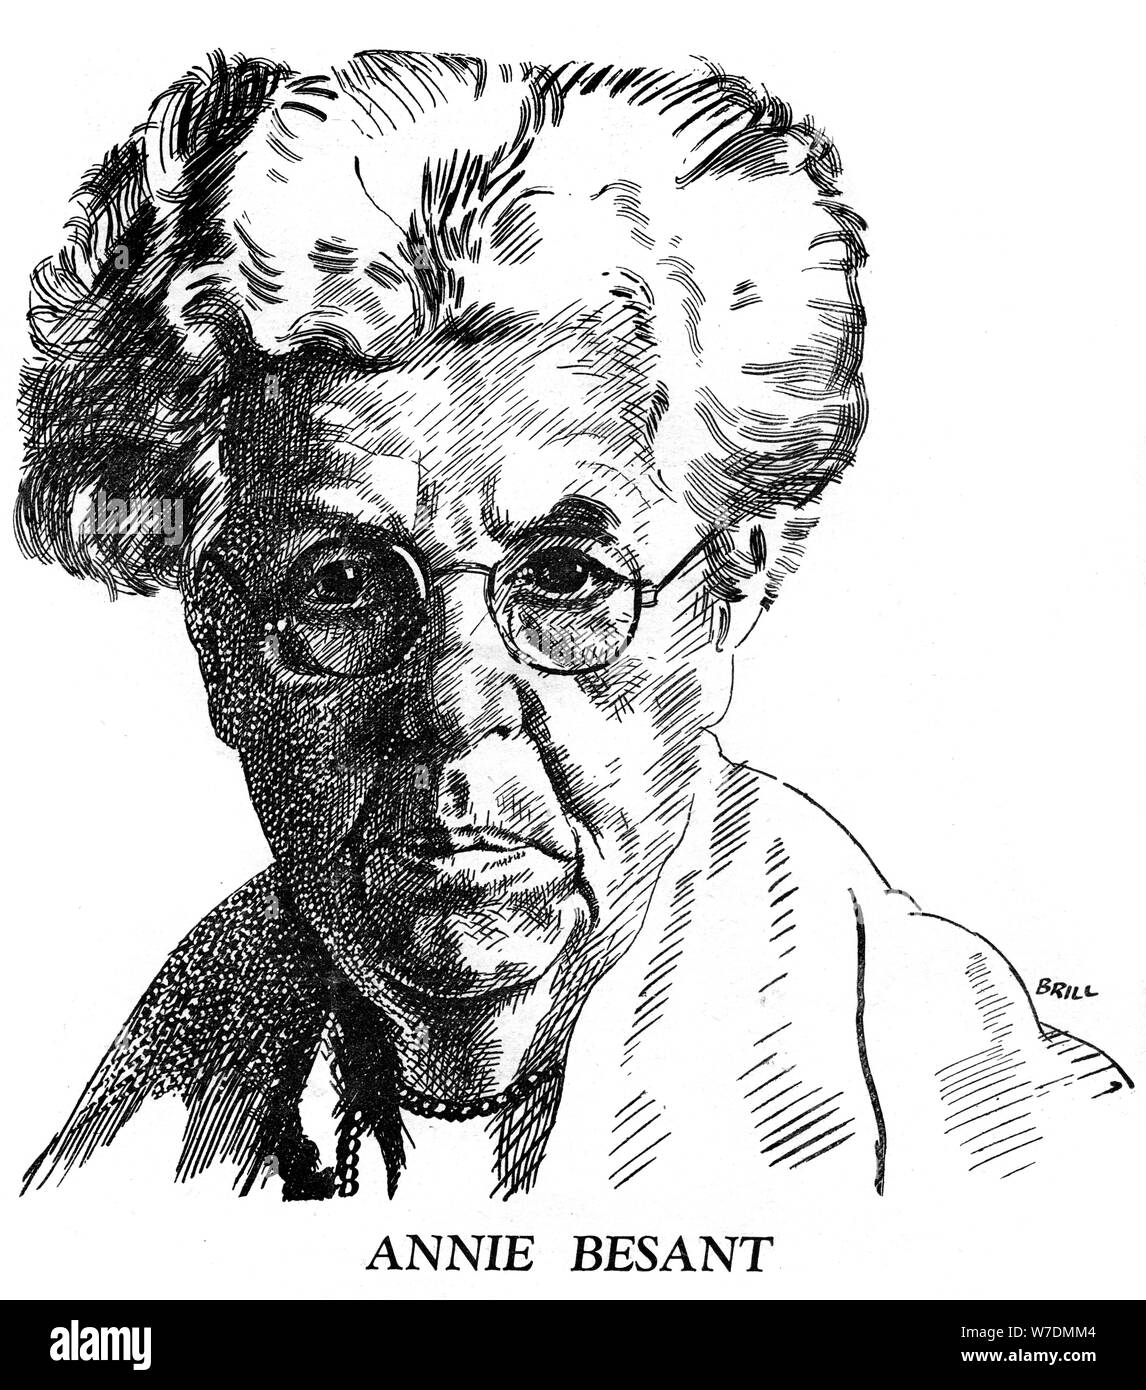 Annie Besant, théosophe et socialiste britannique, 1926. Artiste : Brill Banque D'Images